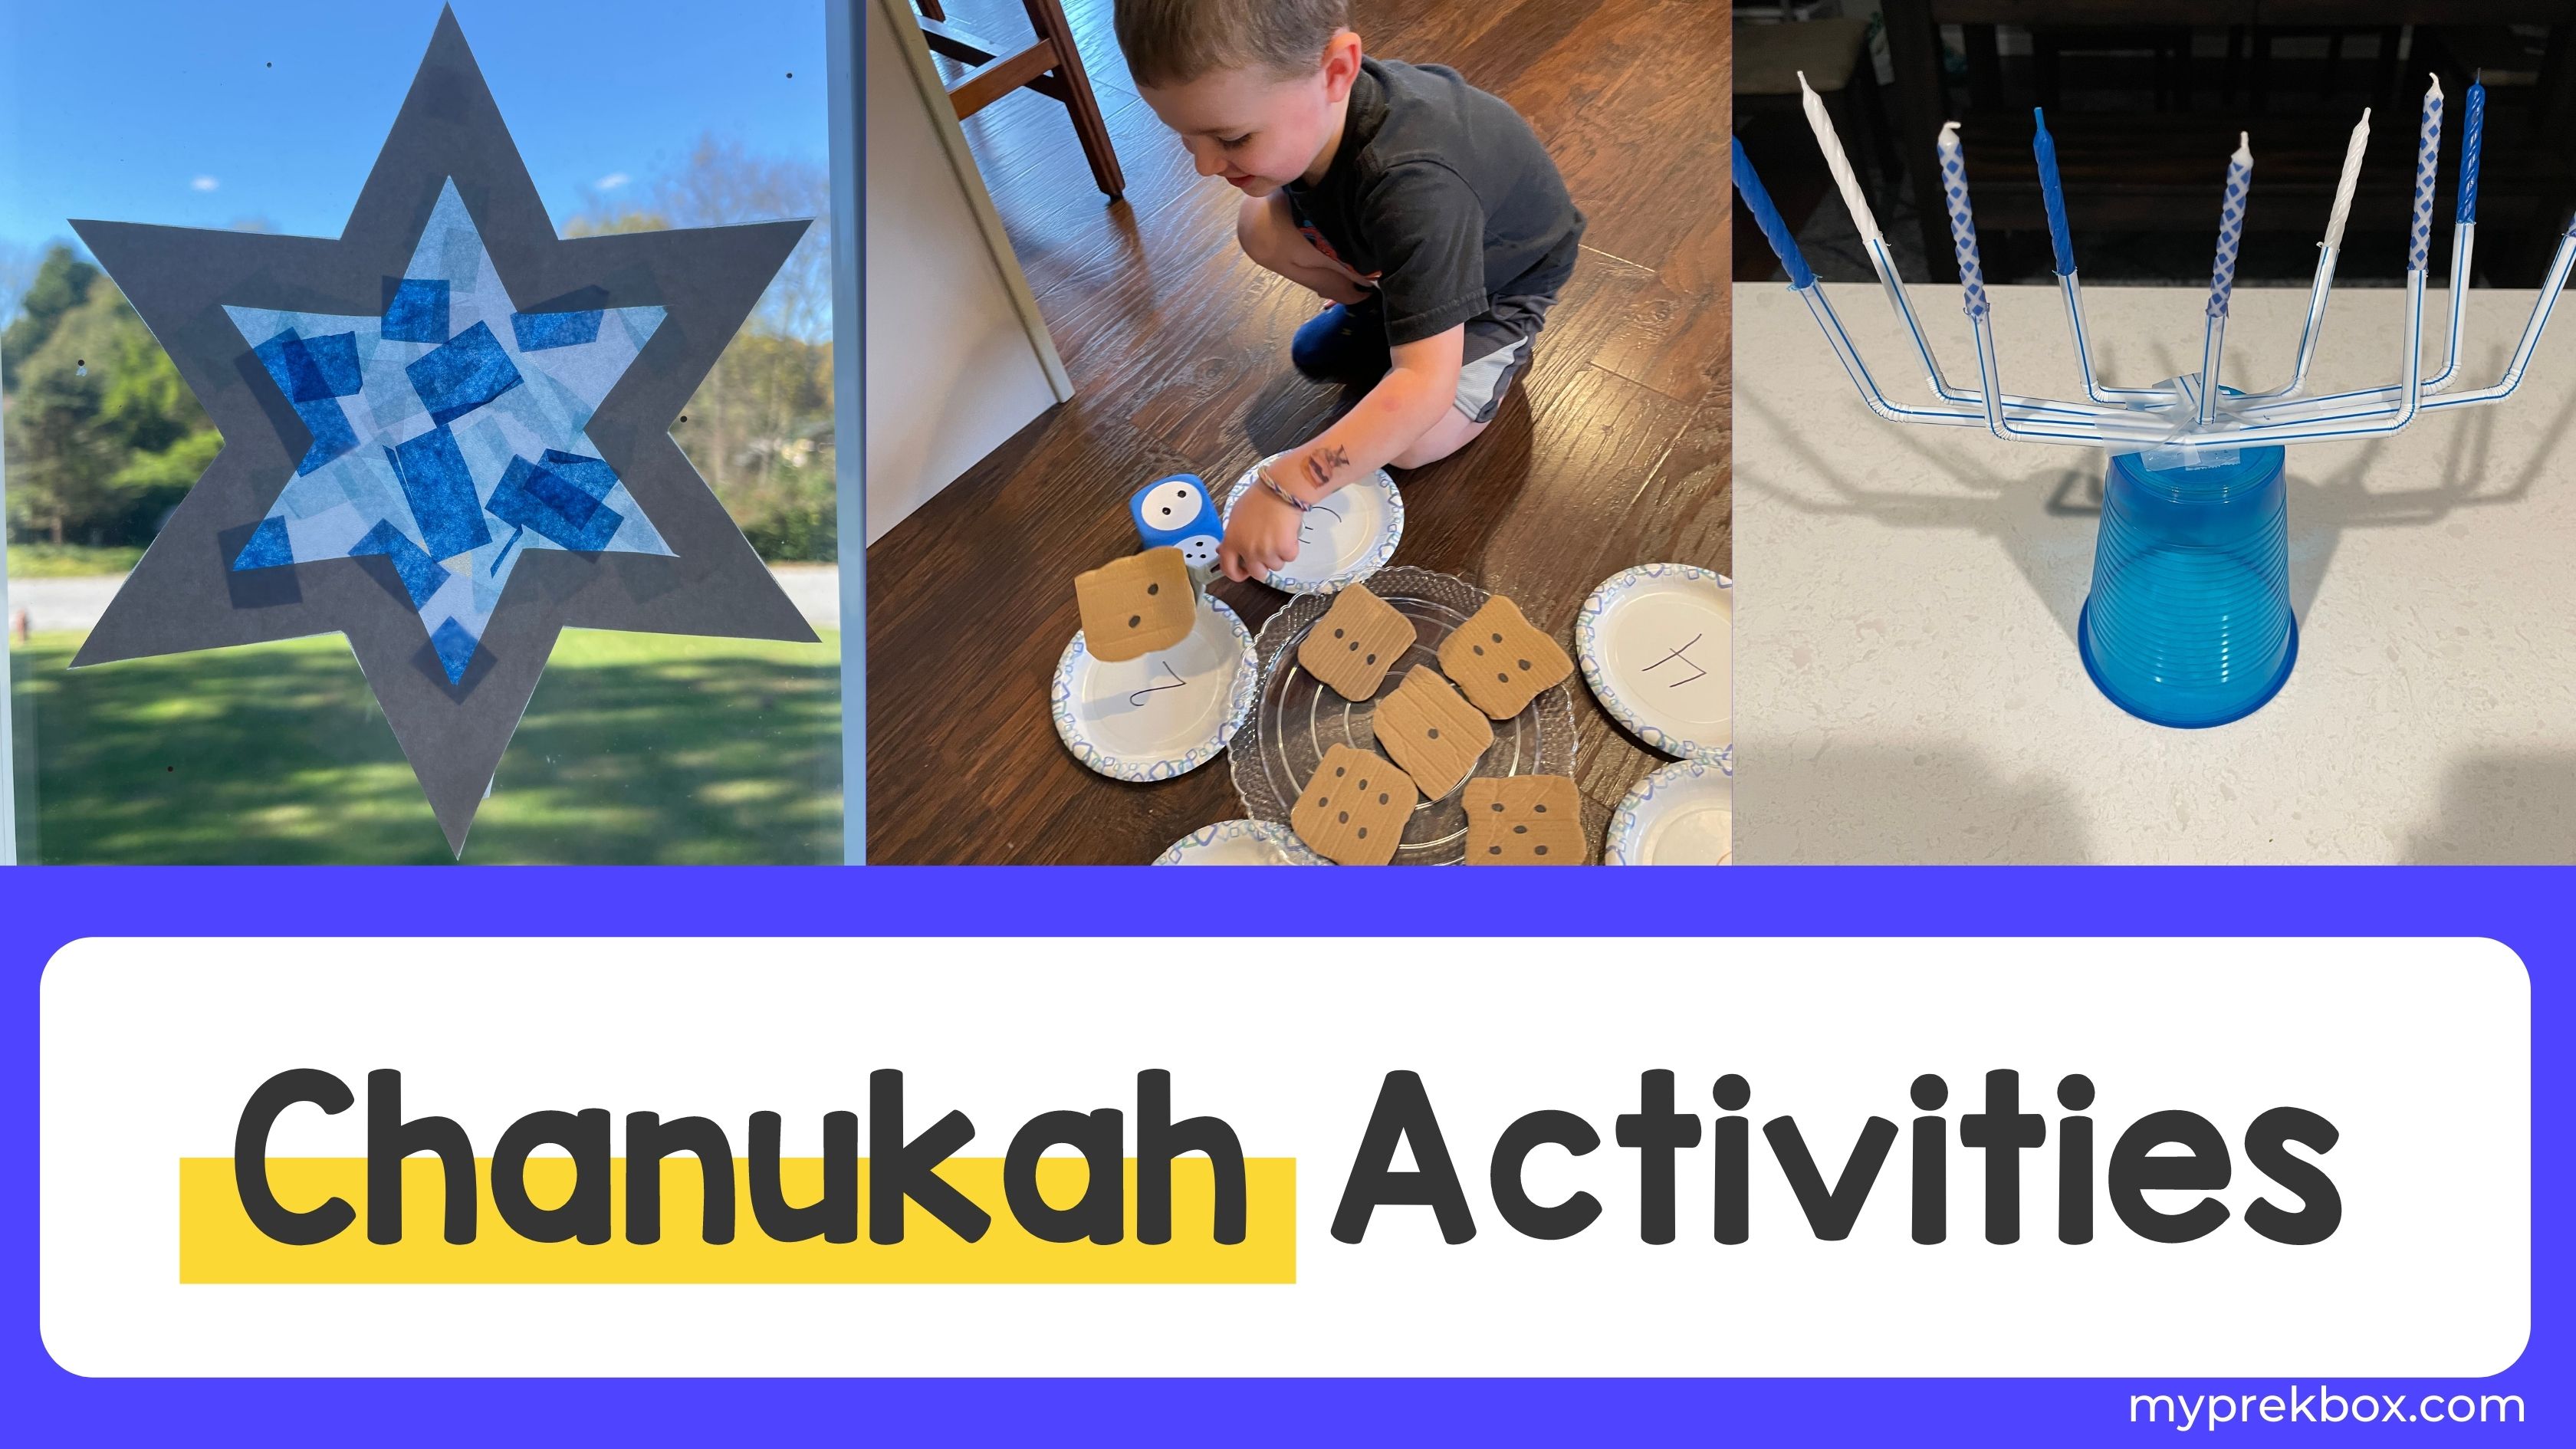 Chanukah Activities for Preschoolers